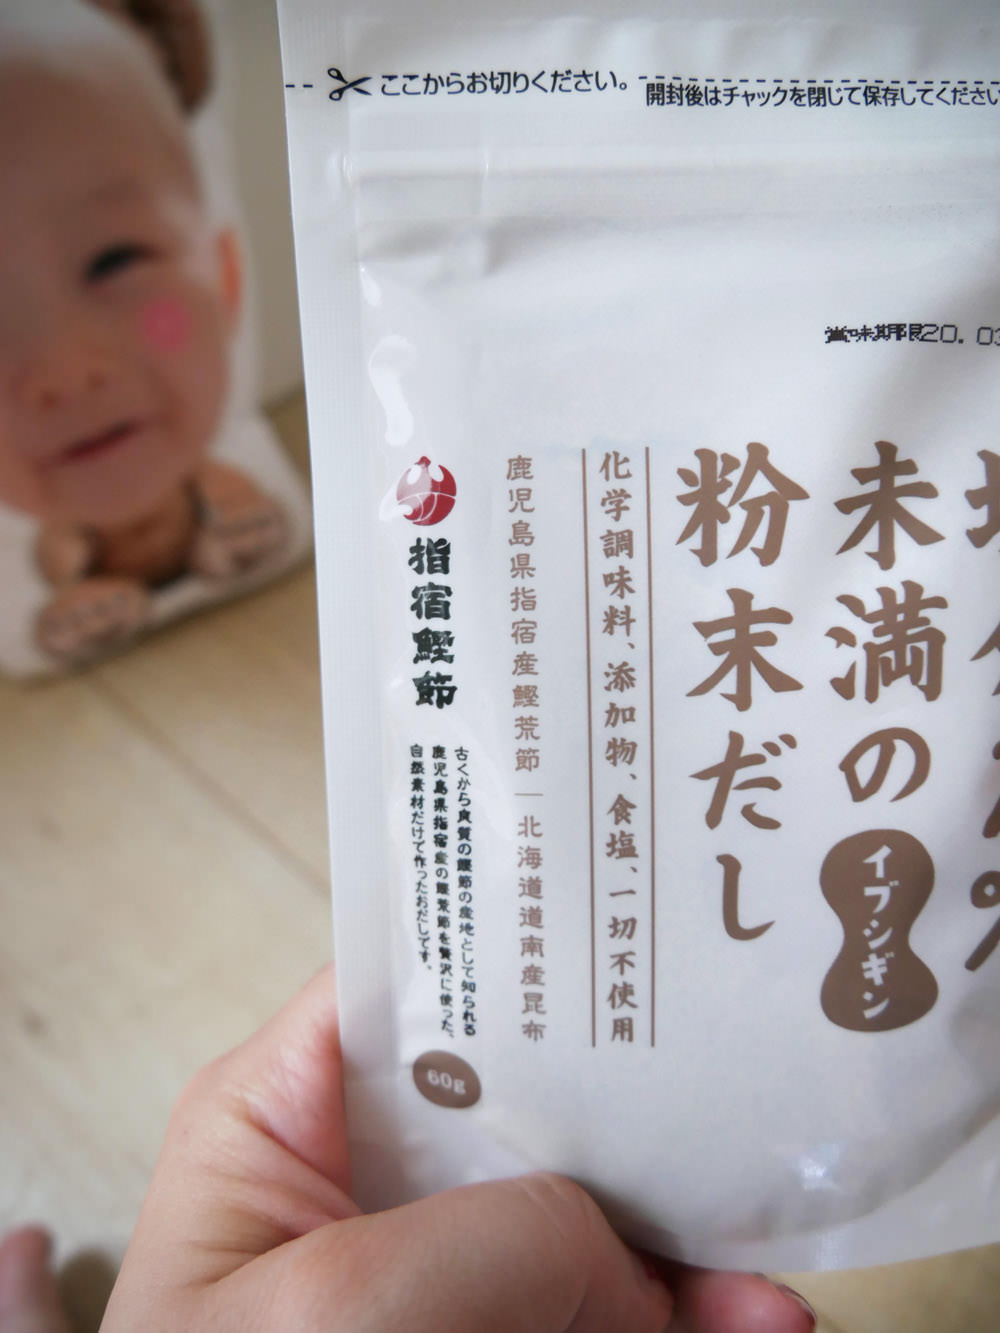 [啾團] 我把小孩的食物變好吃了.日本ORiDGE無食鹽昆布柴魚粉/日本CANYON兒童咖哩